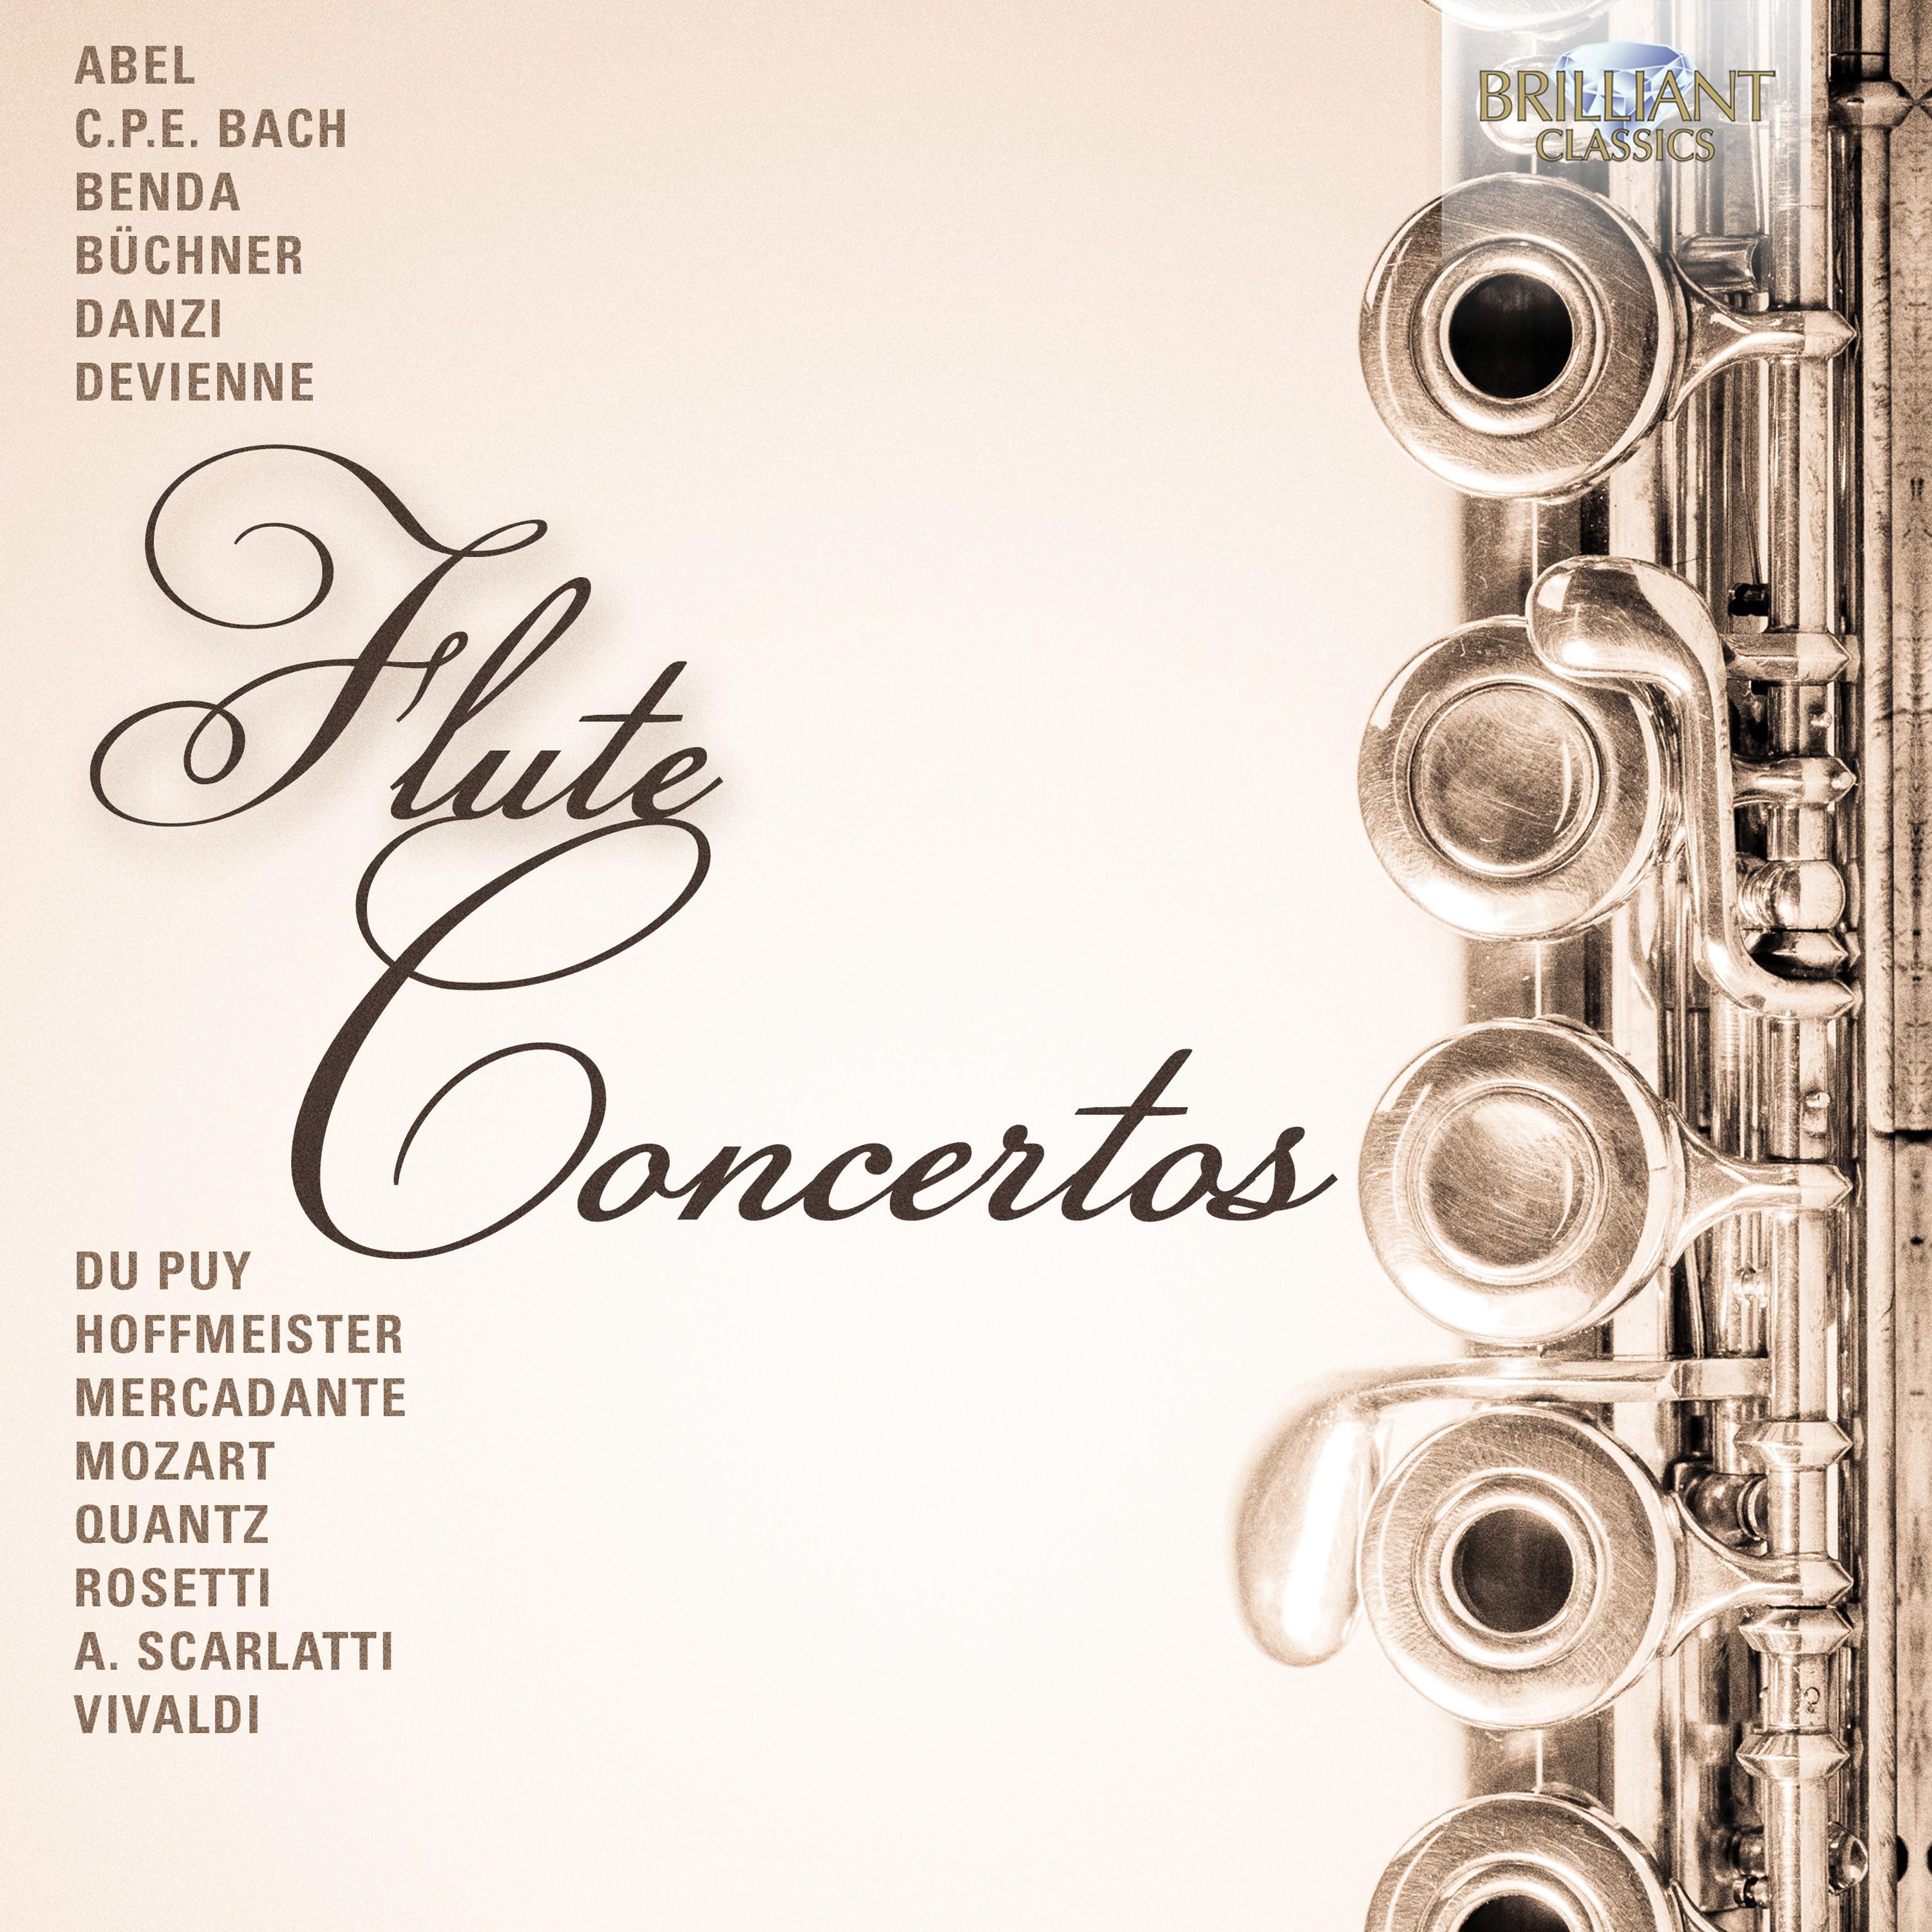 Flute Concerto in D Minor, Wq. 22: I. Allegro